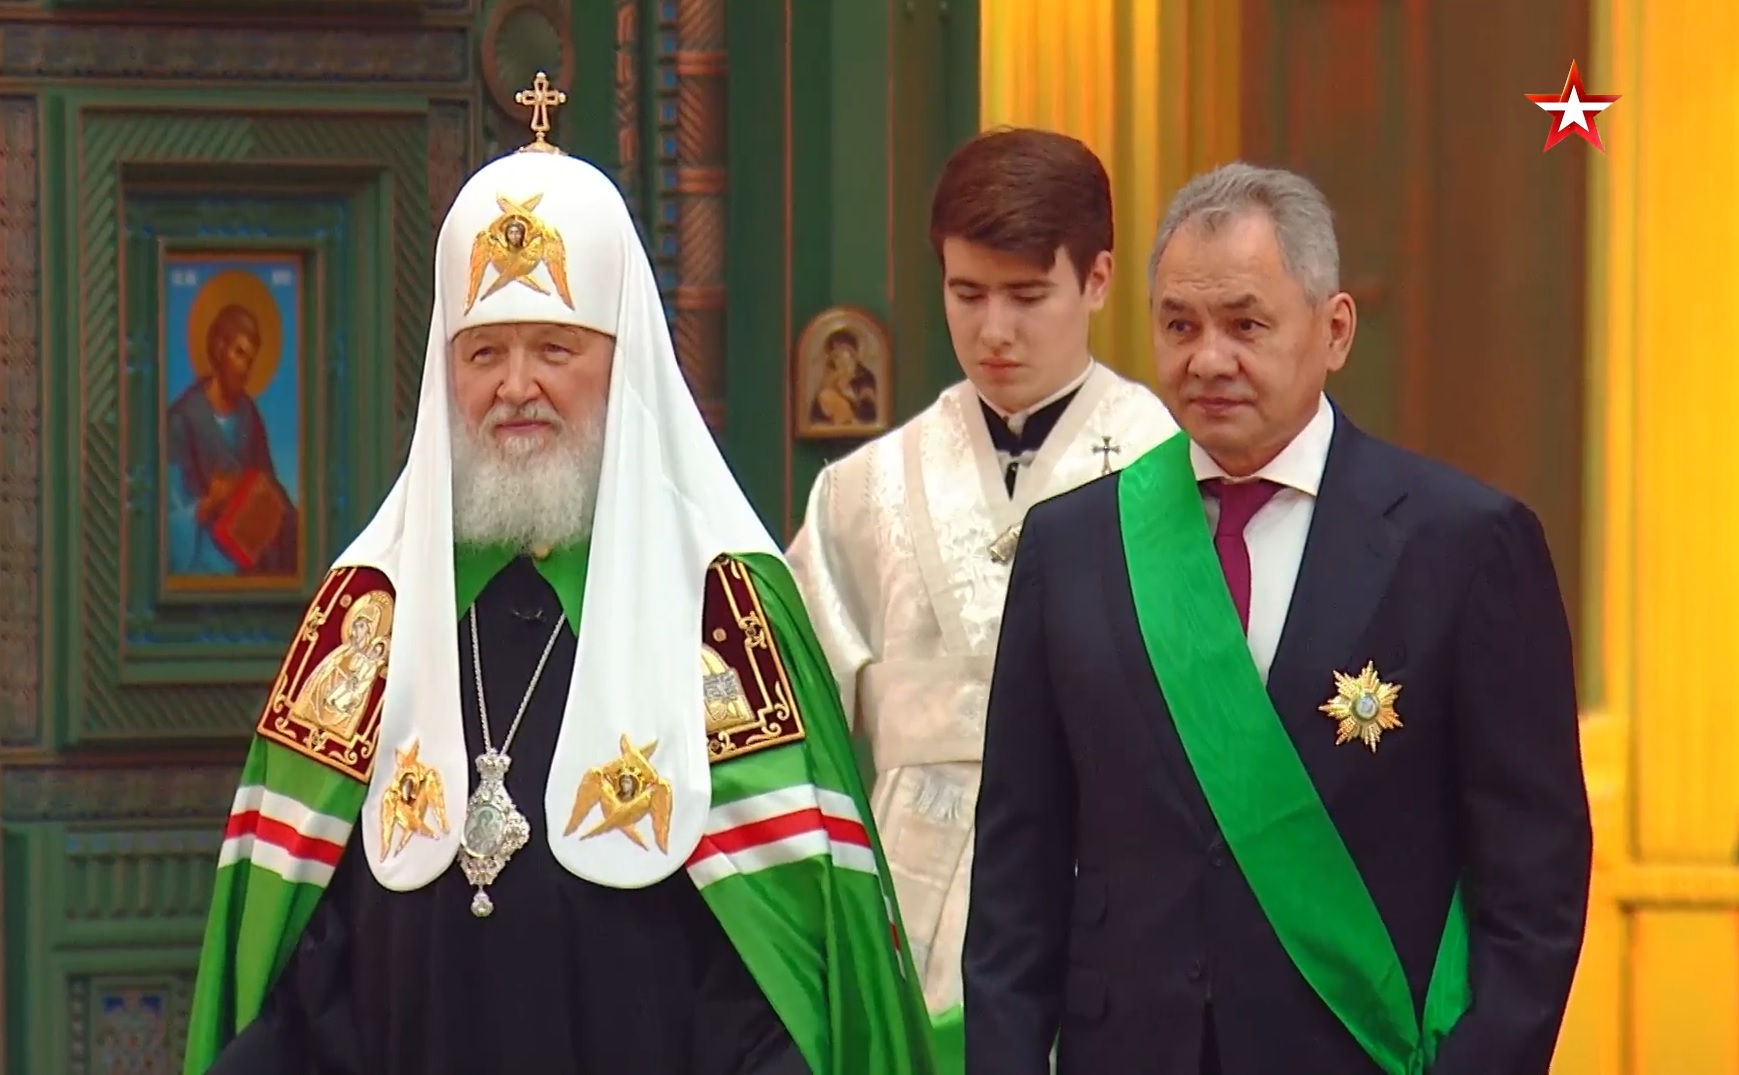 Патриарх Кирилл наградил Сергея Шойгу в годовщину Главного храма